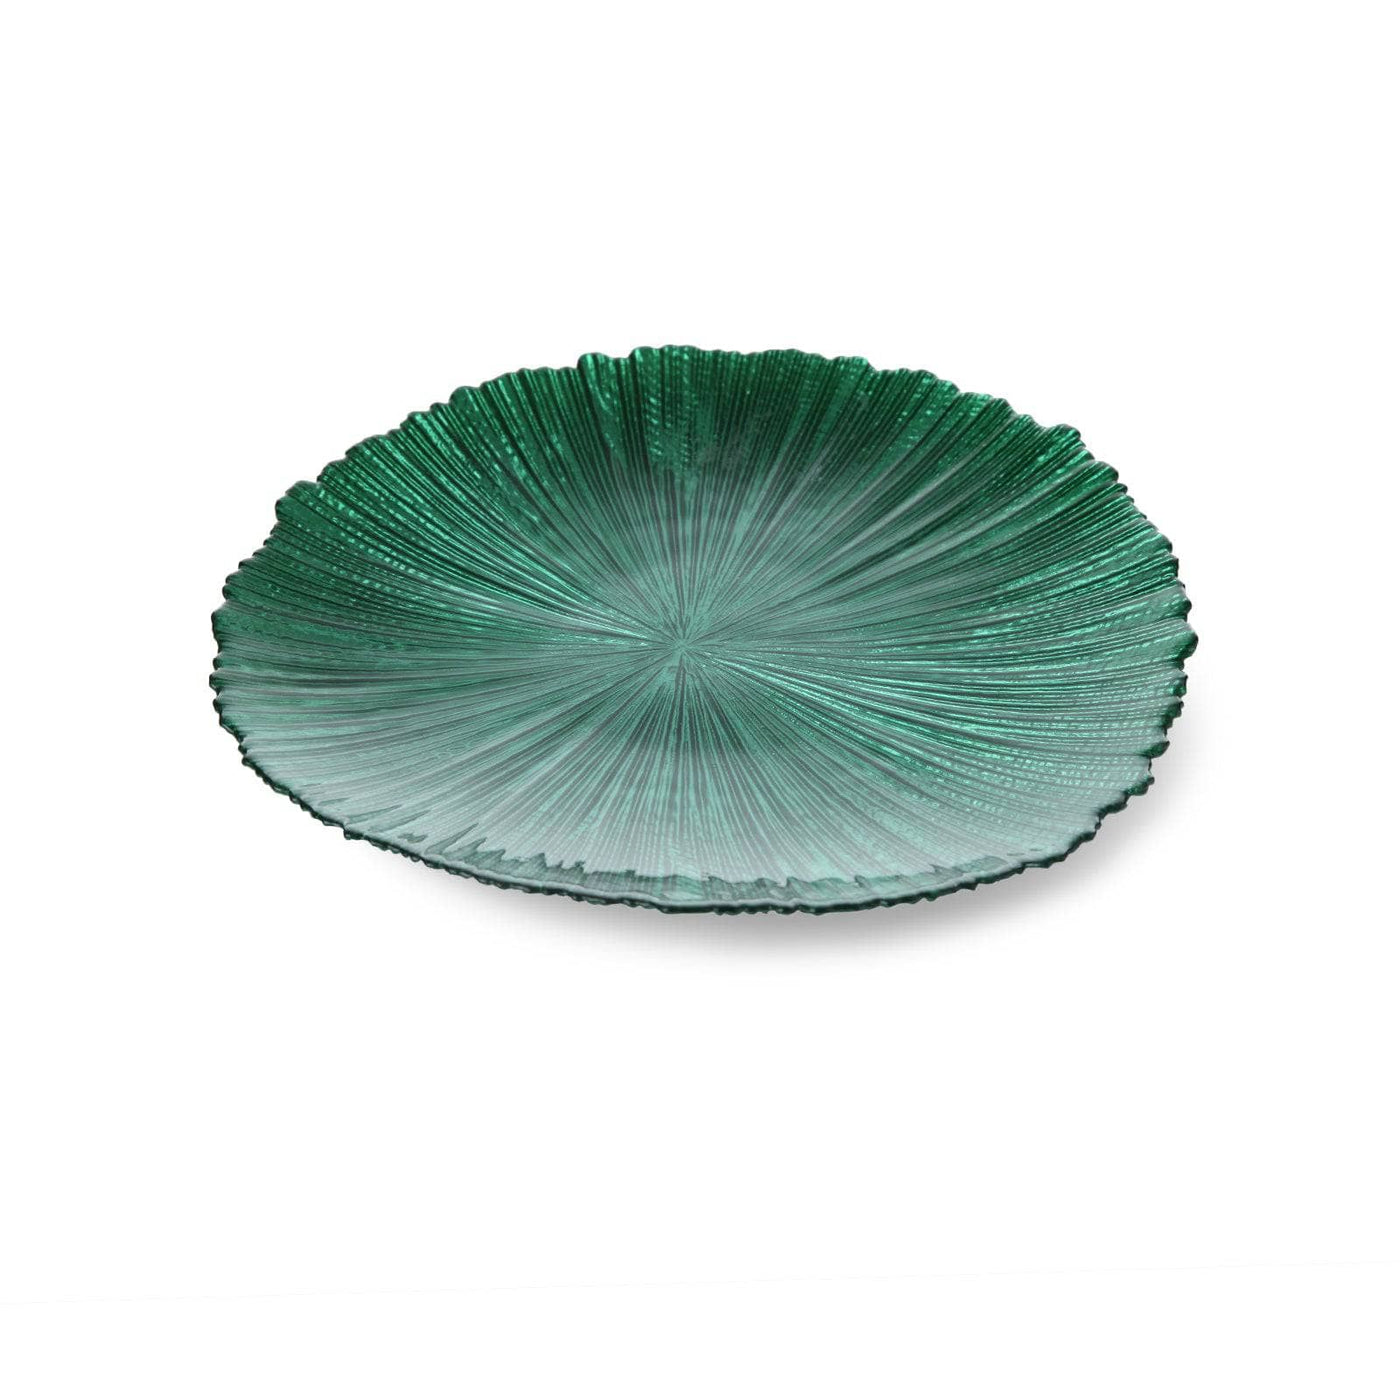 Tamara Side Plate, Green, 21 cm Plates sazy.com